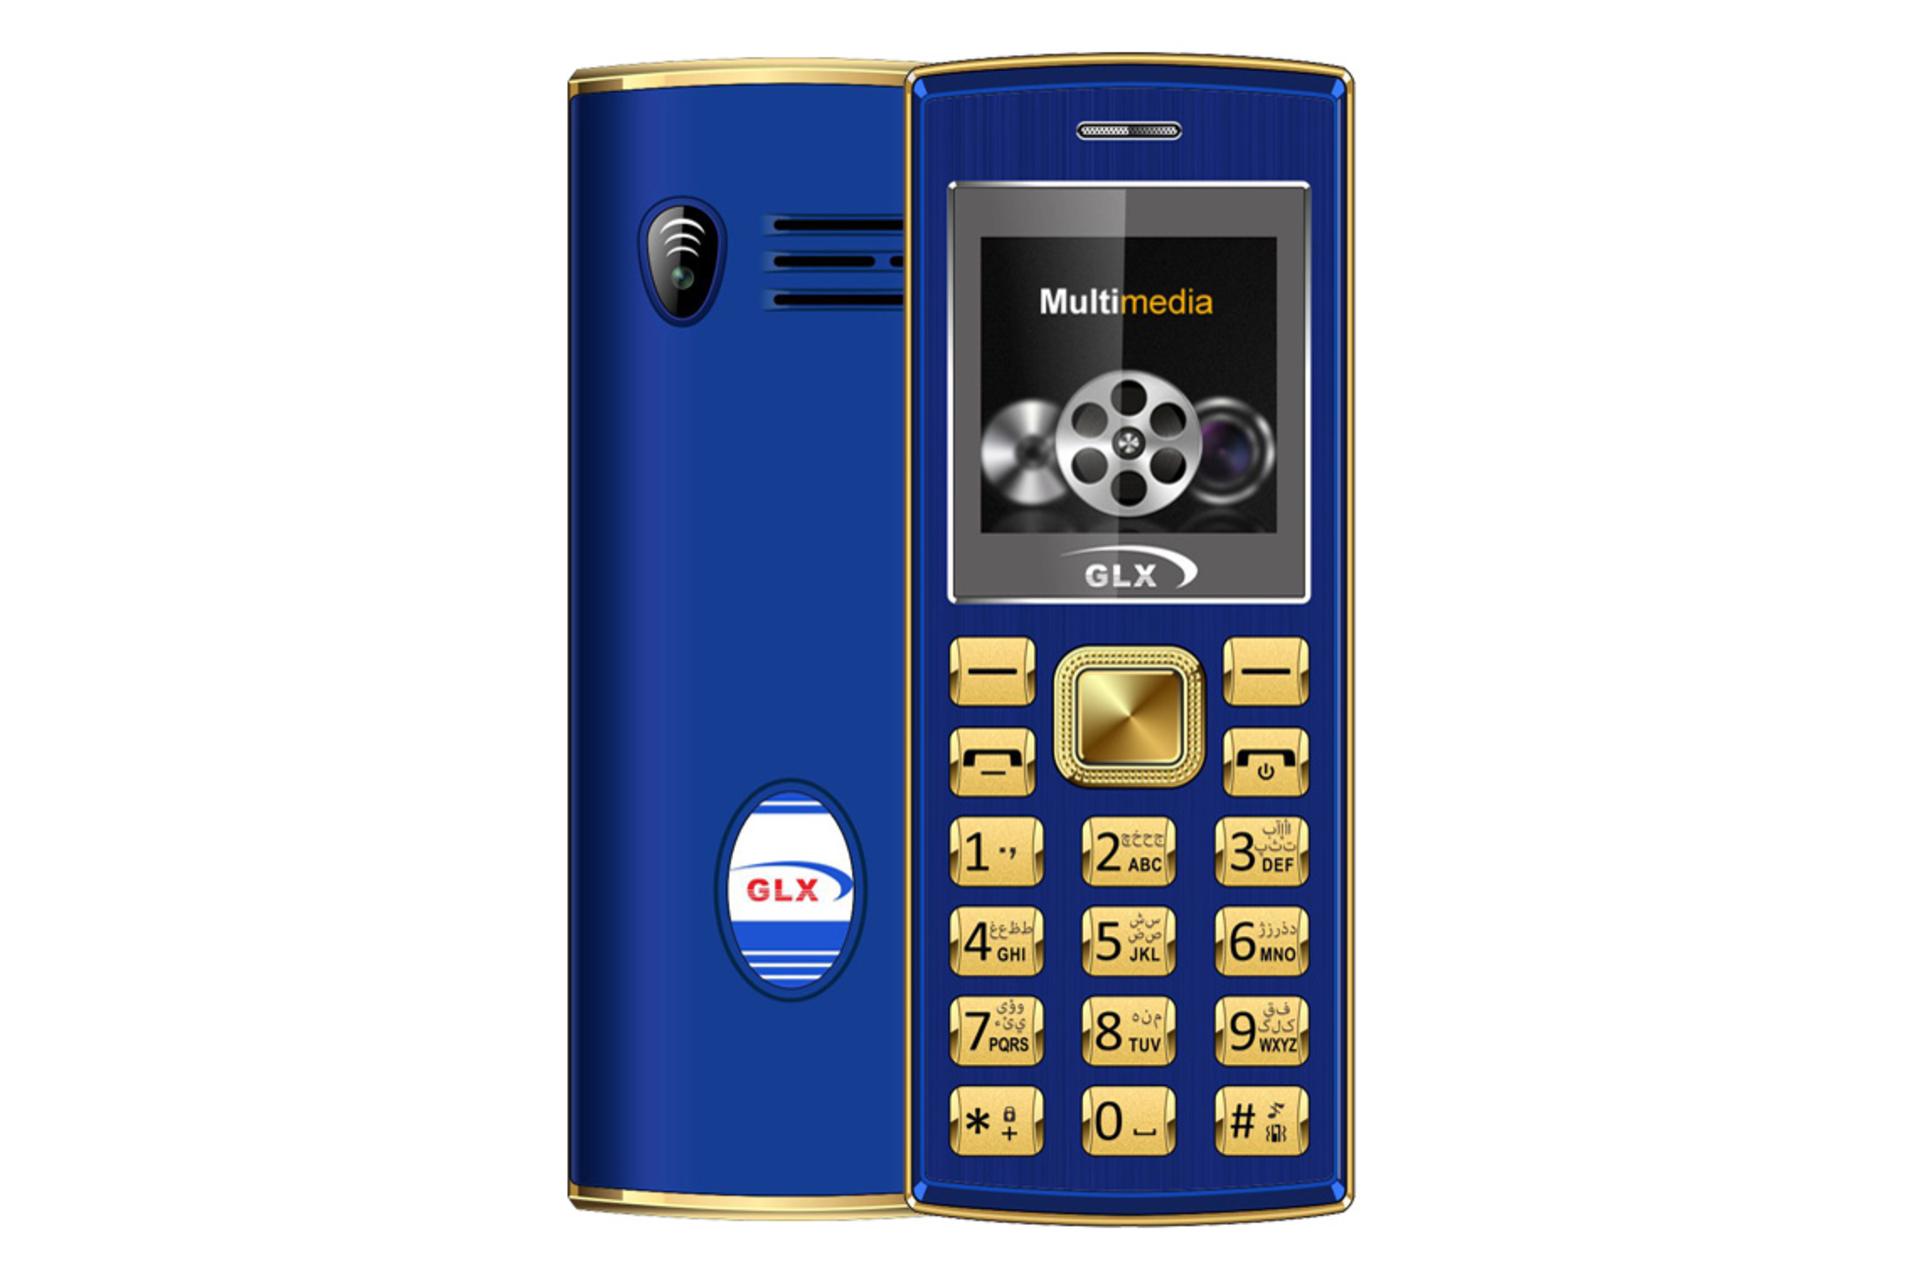 گوشی موبایل 2690 گلد مینی پلاس جی ال ایکس / GLX 2690 Gold Mini Plus آبی و طلایی